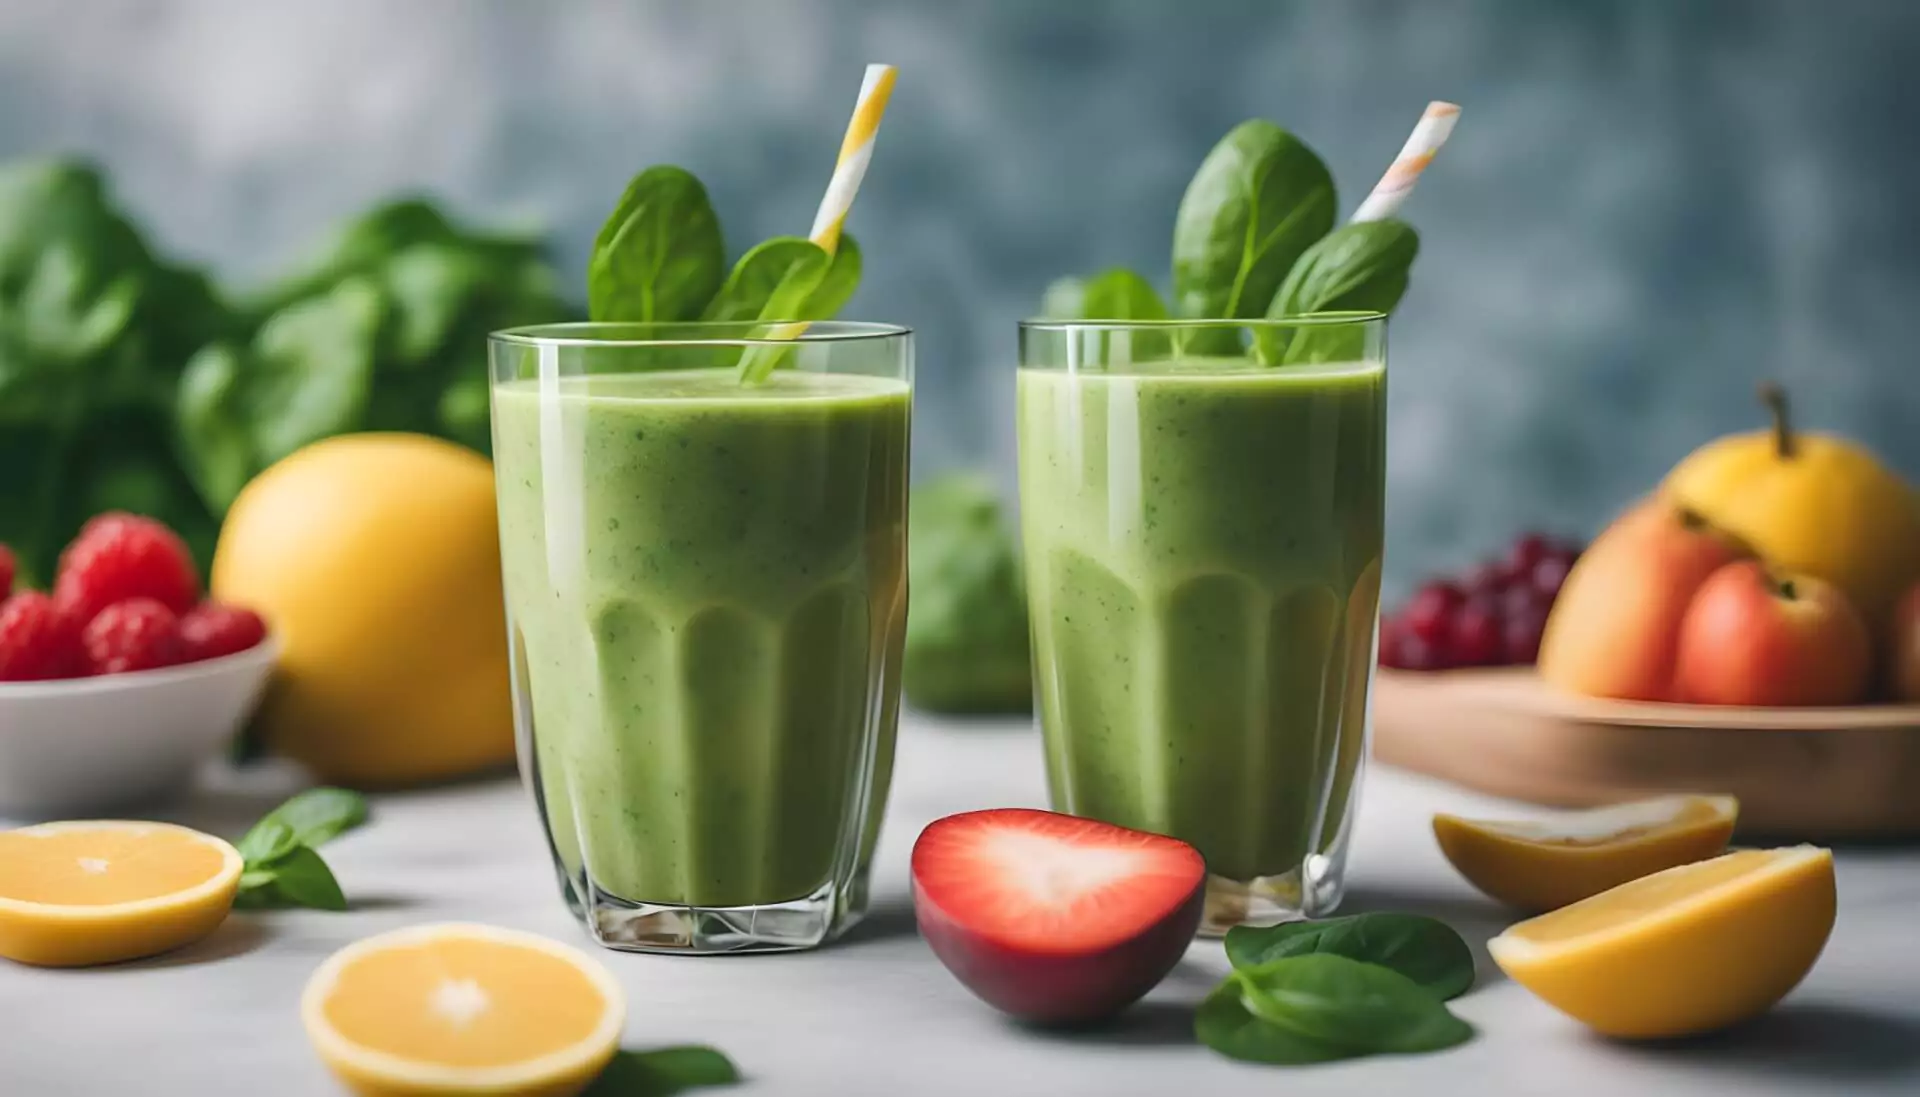 zielone smoothie - zdrowy koktajl z warzywami